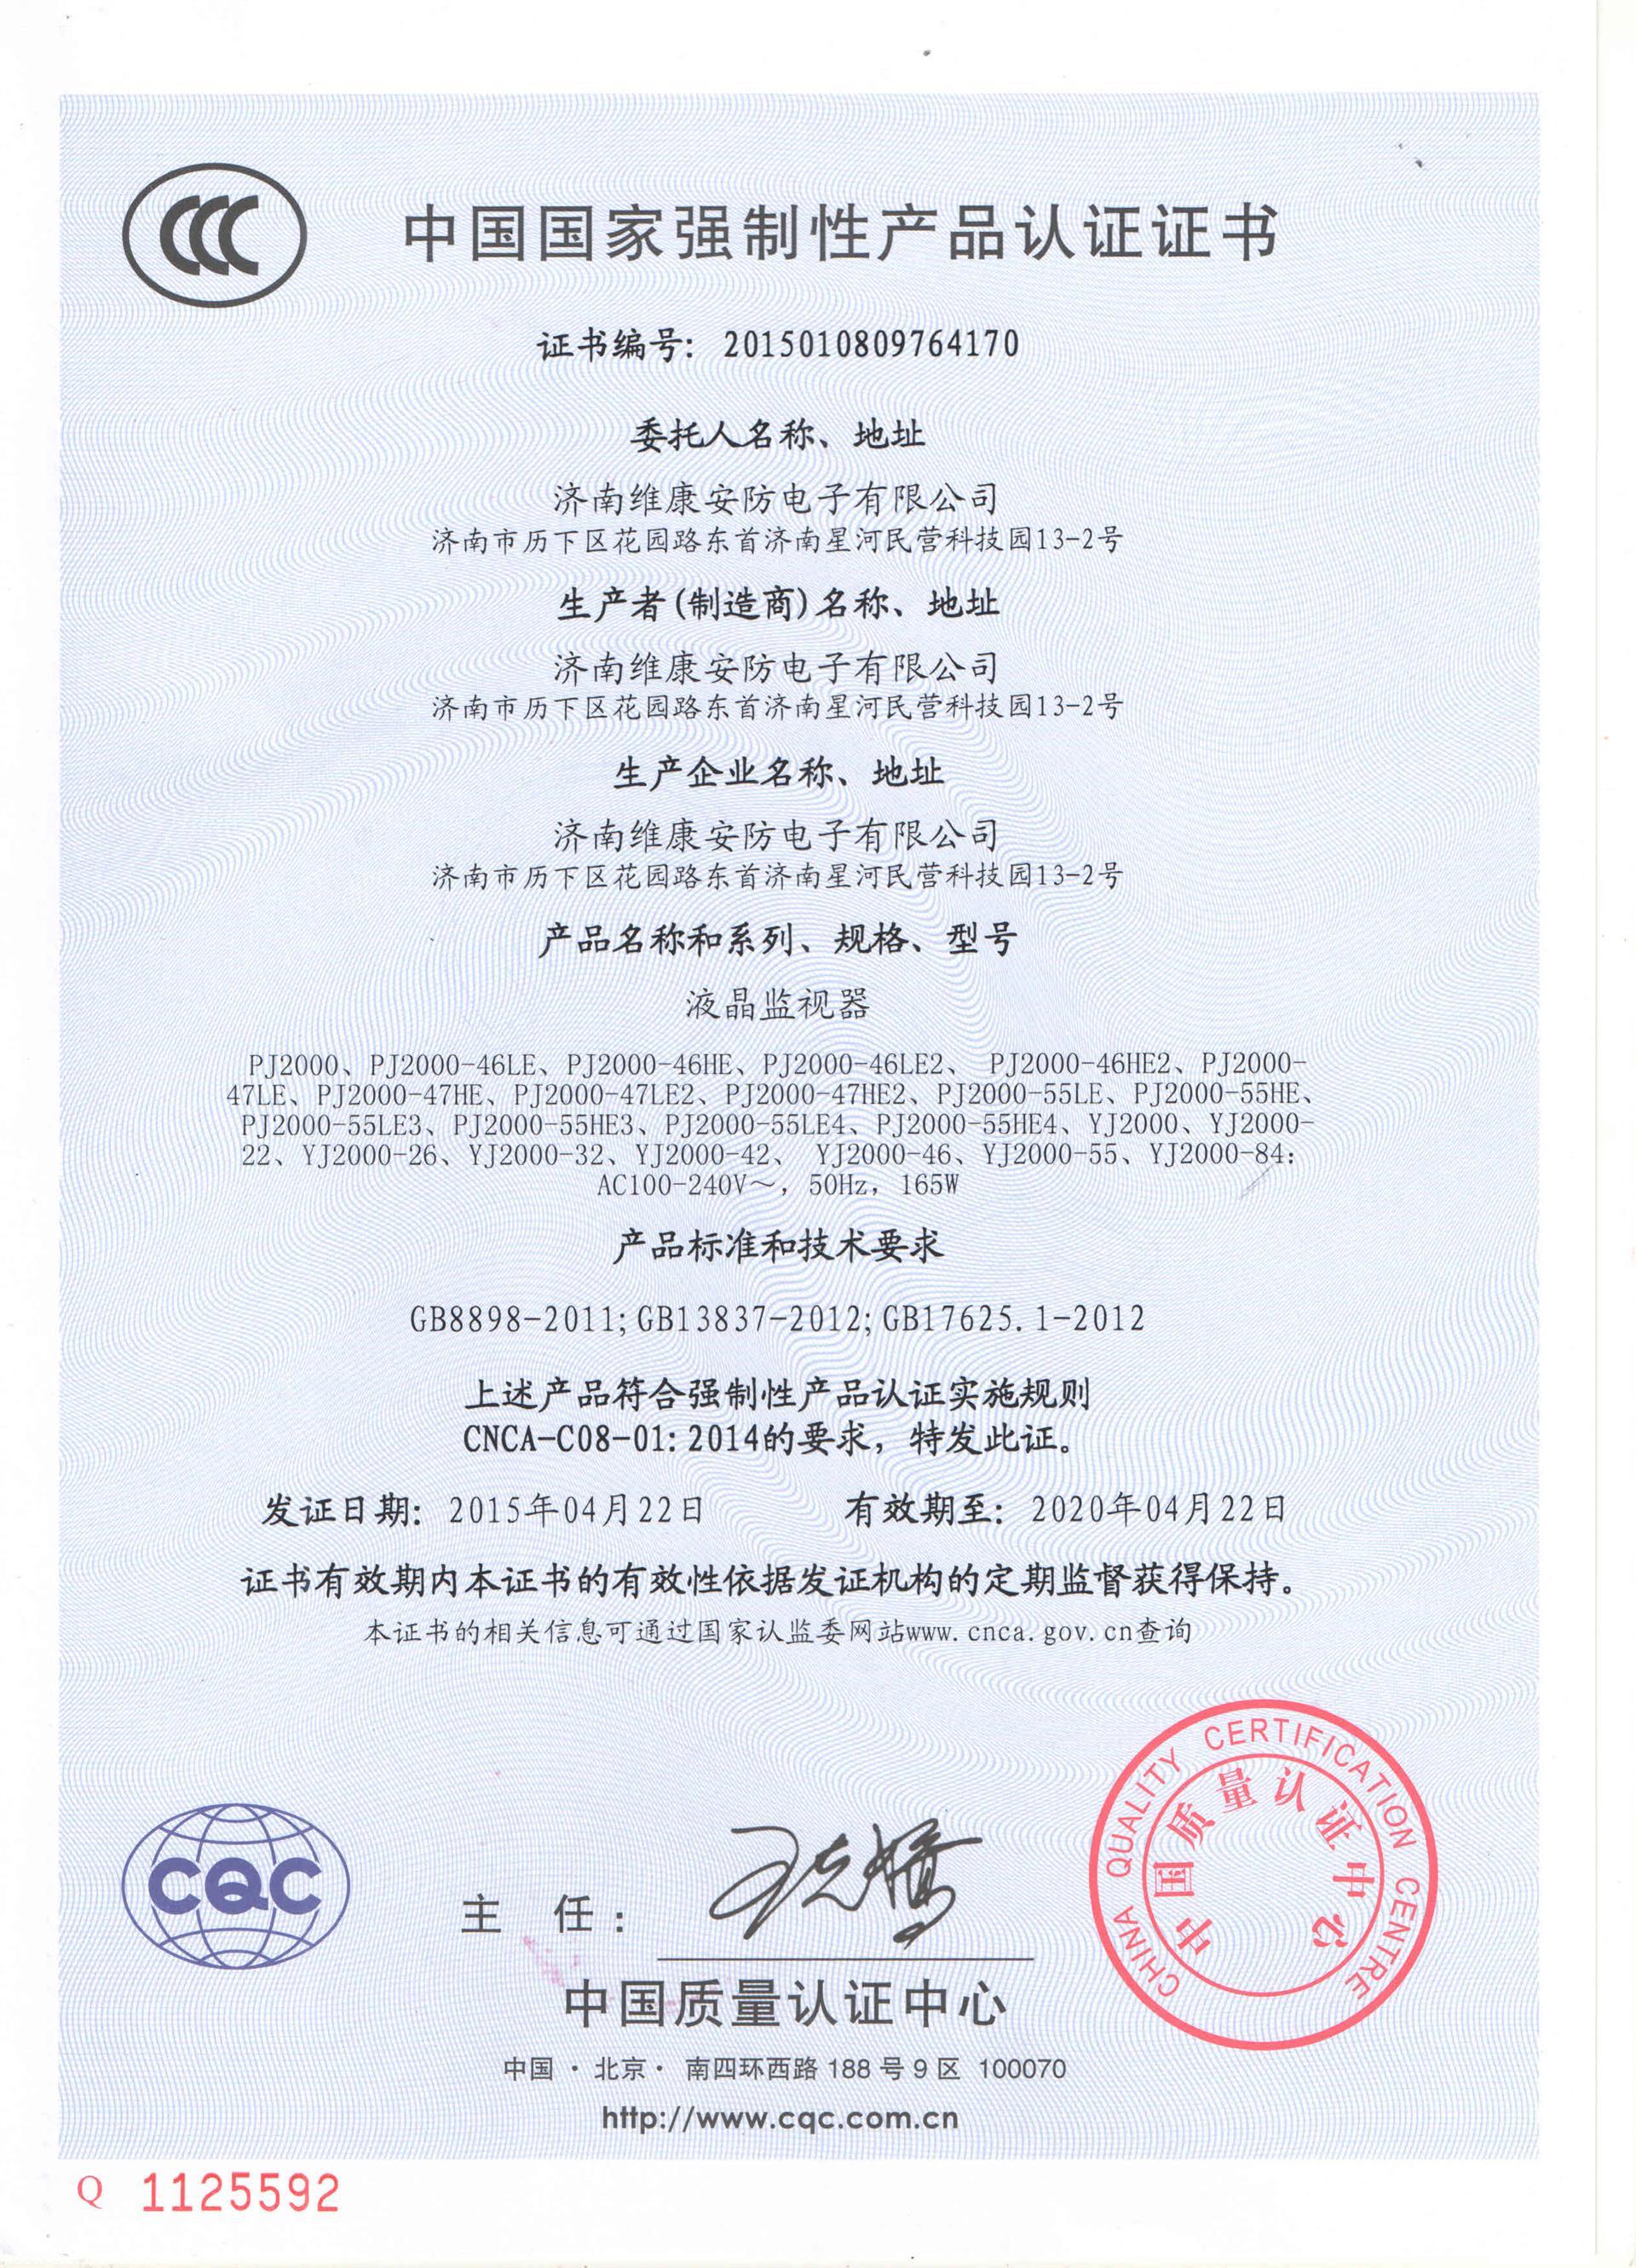 首页 维康视界(深圳)科技有限公司 资质证书 证书名称:3c认证 发证